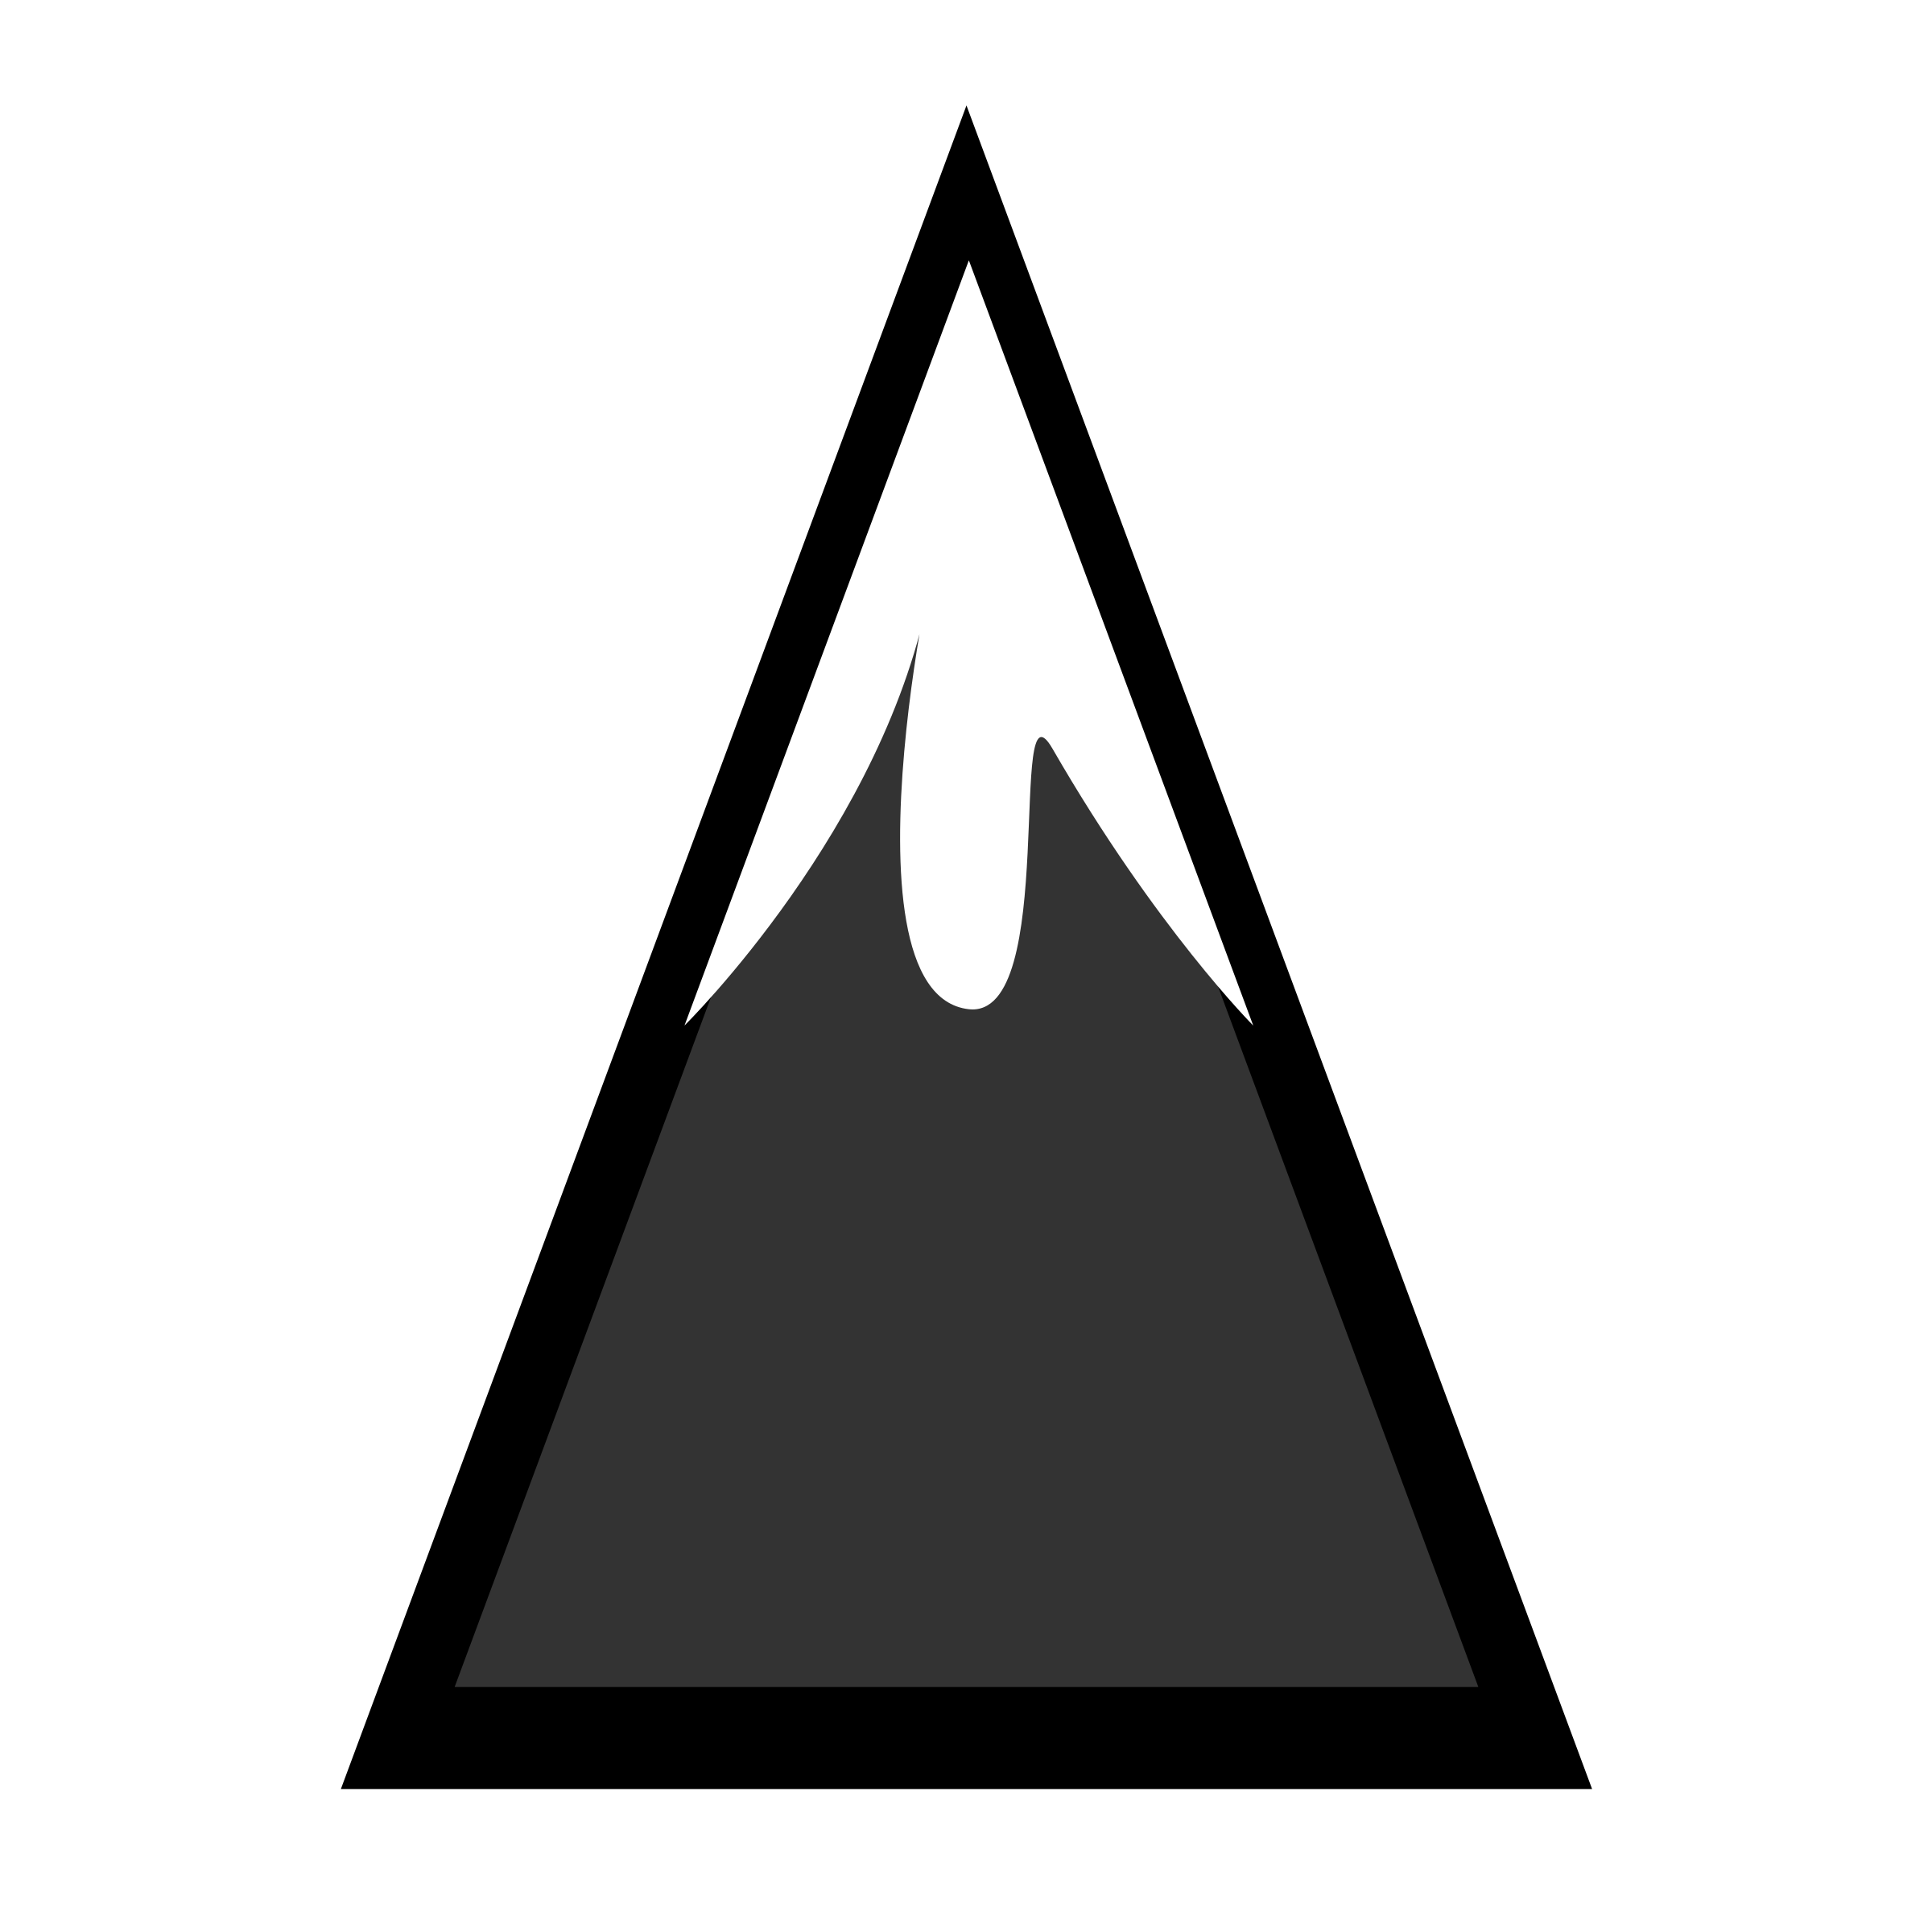 Free mountain clipart mountains clip art vector 4